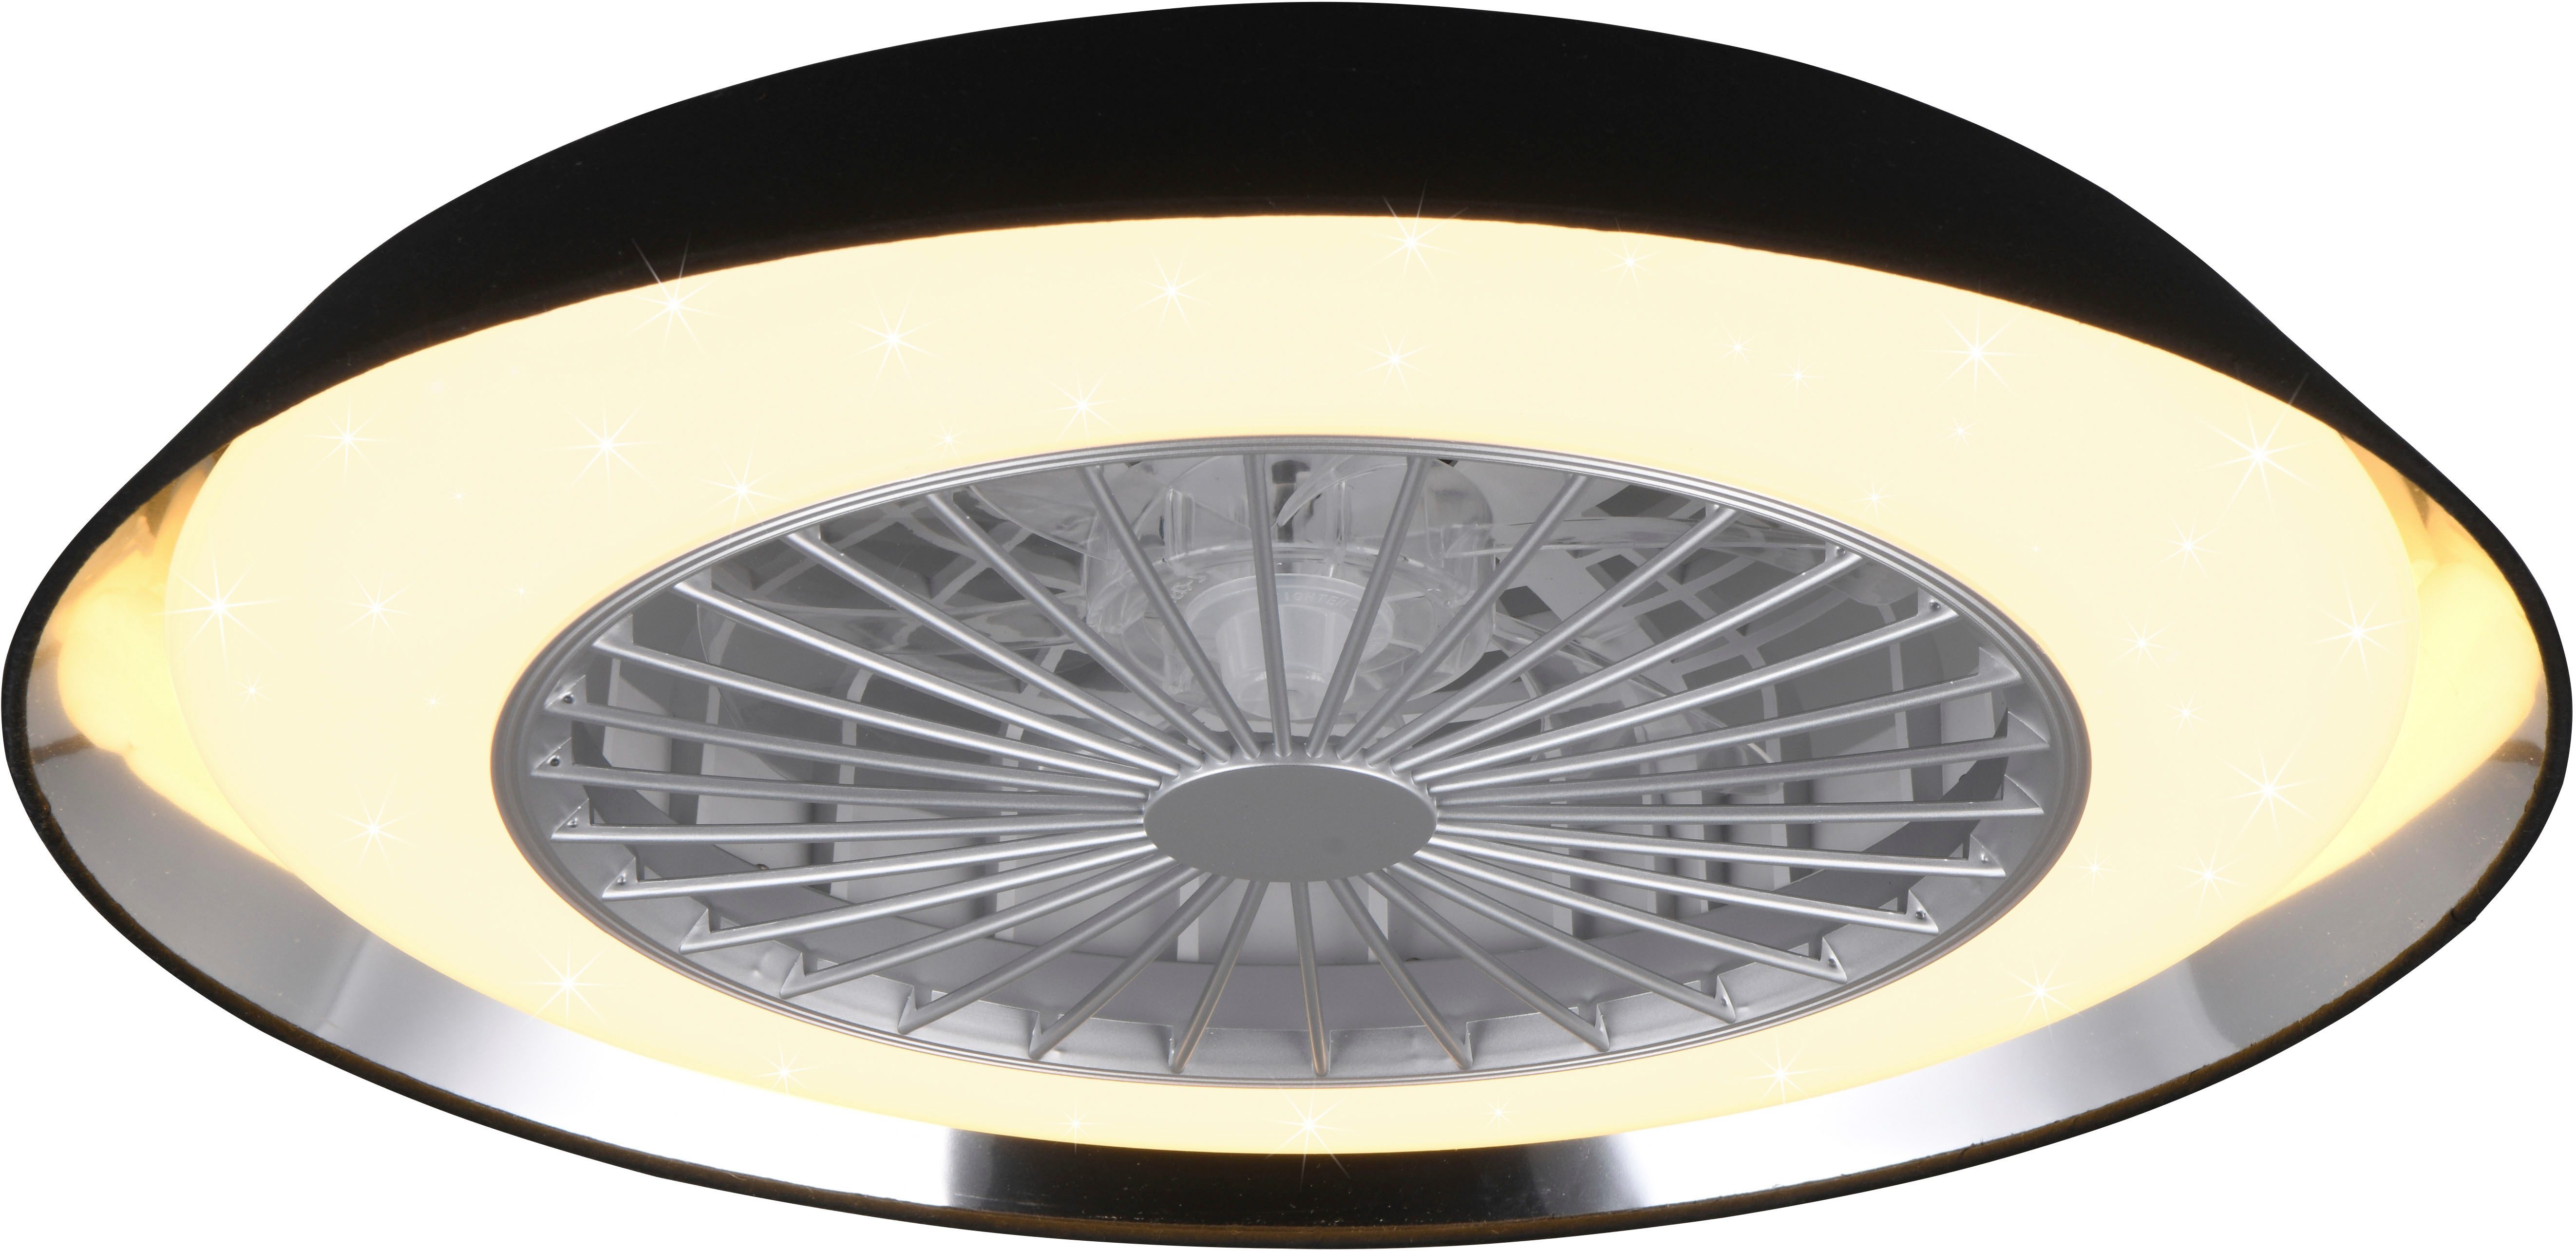 TRIO Leuchten LED Deckenleuchte VARBERG Deckenventilator mit Beleuchtung, mit Fernbedienung, dimmbar, Memoryfunktion, Nachtlichtfunktion, Timerfunktion, Ventilatorfunktion, LED fest integriert, warmweiß - kaltweiß, LED Ventilator 3 Stufen Timer Memoryfunktion Lichtfarbe einstellbar